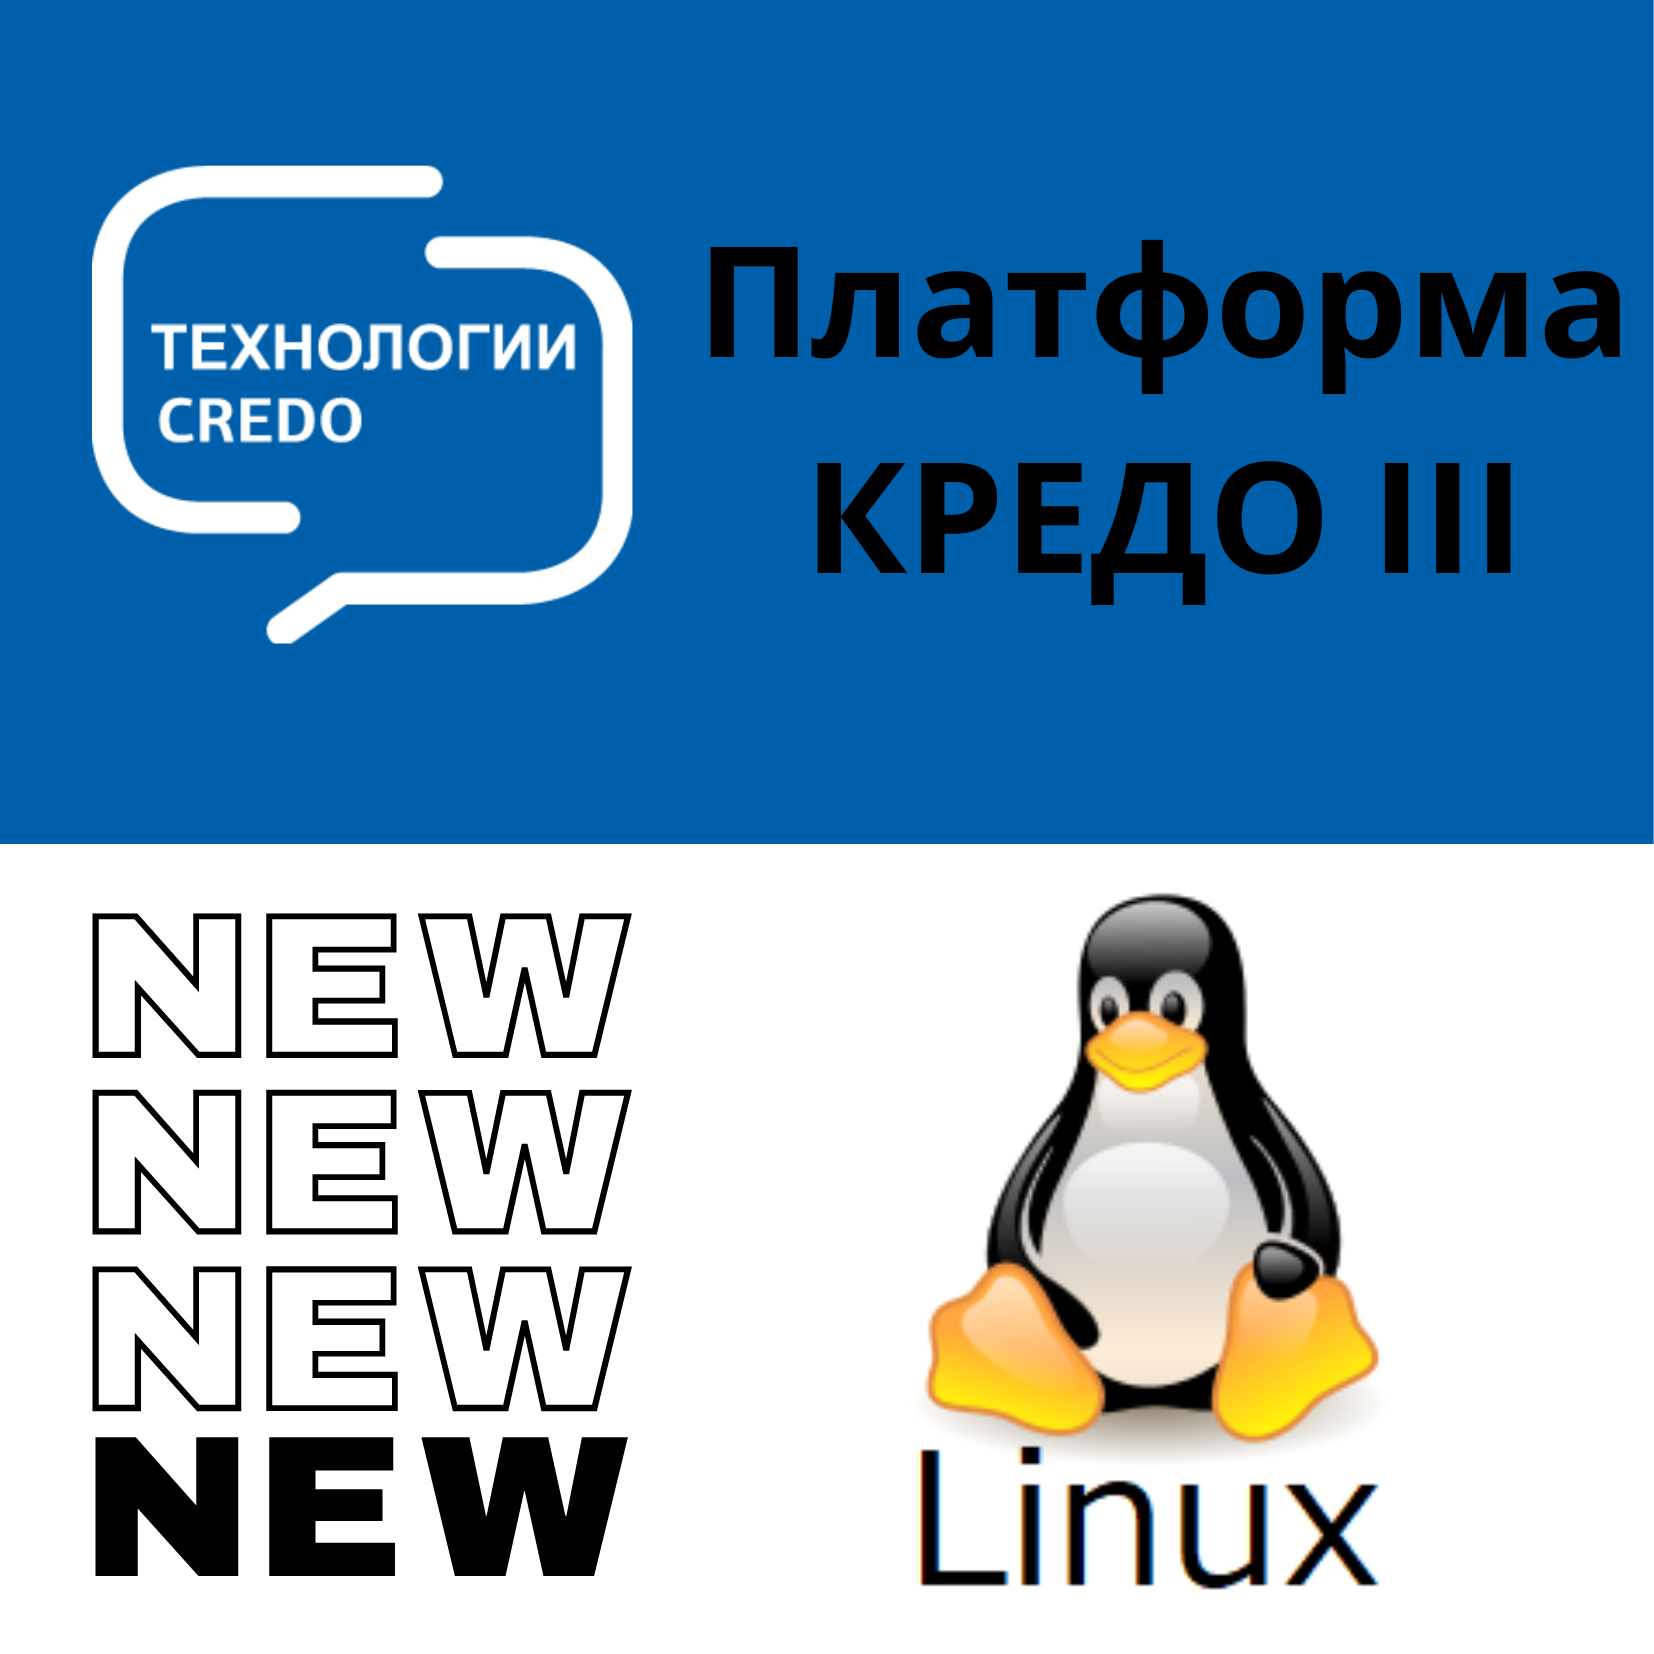 КРЕДО III версии 2.9 работает с ОС Astra Linux